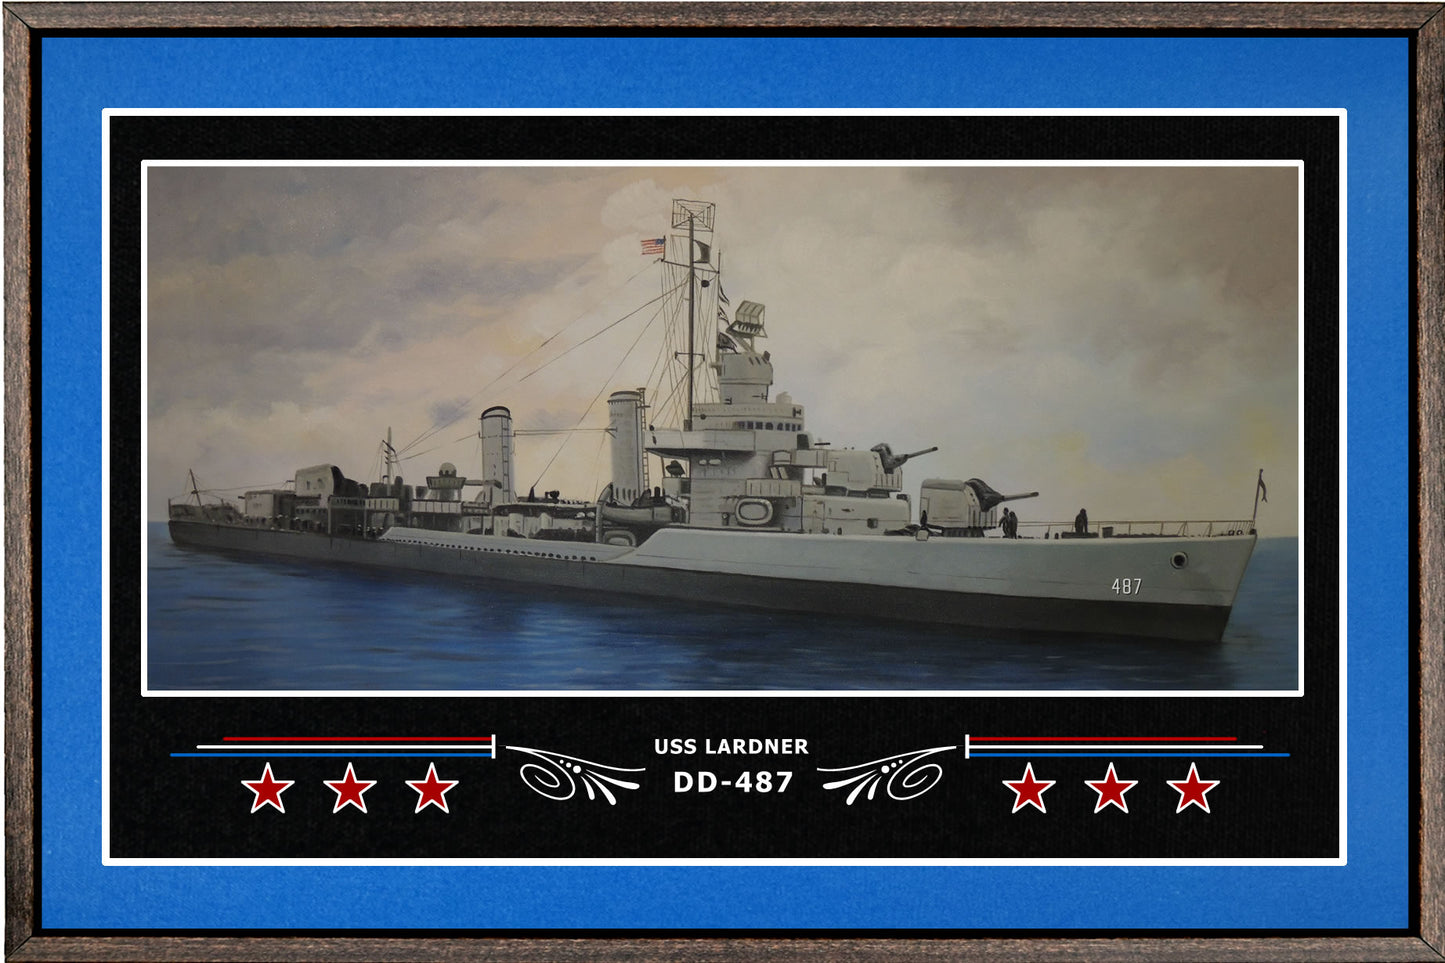 USS LARDNER DD 487 BOX FRAMED CANVAS ART BLUE